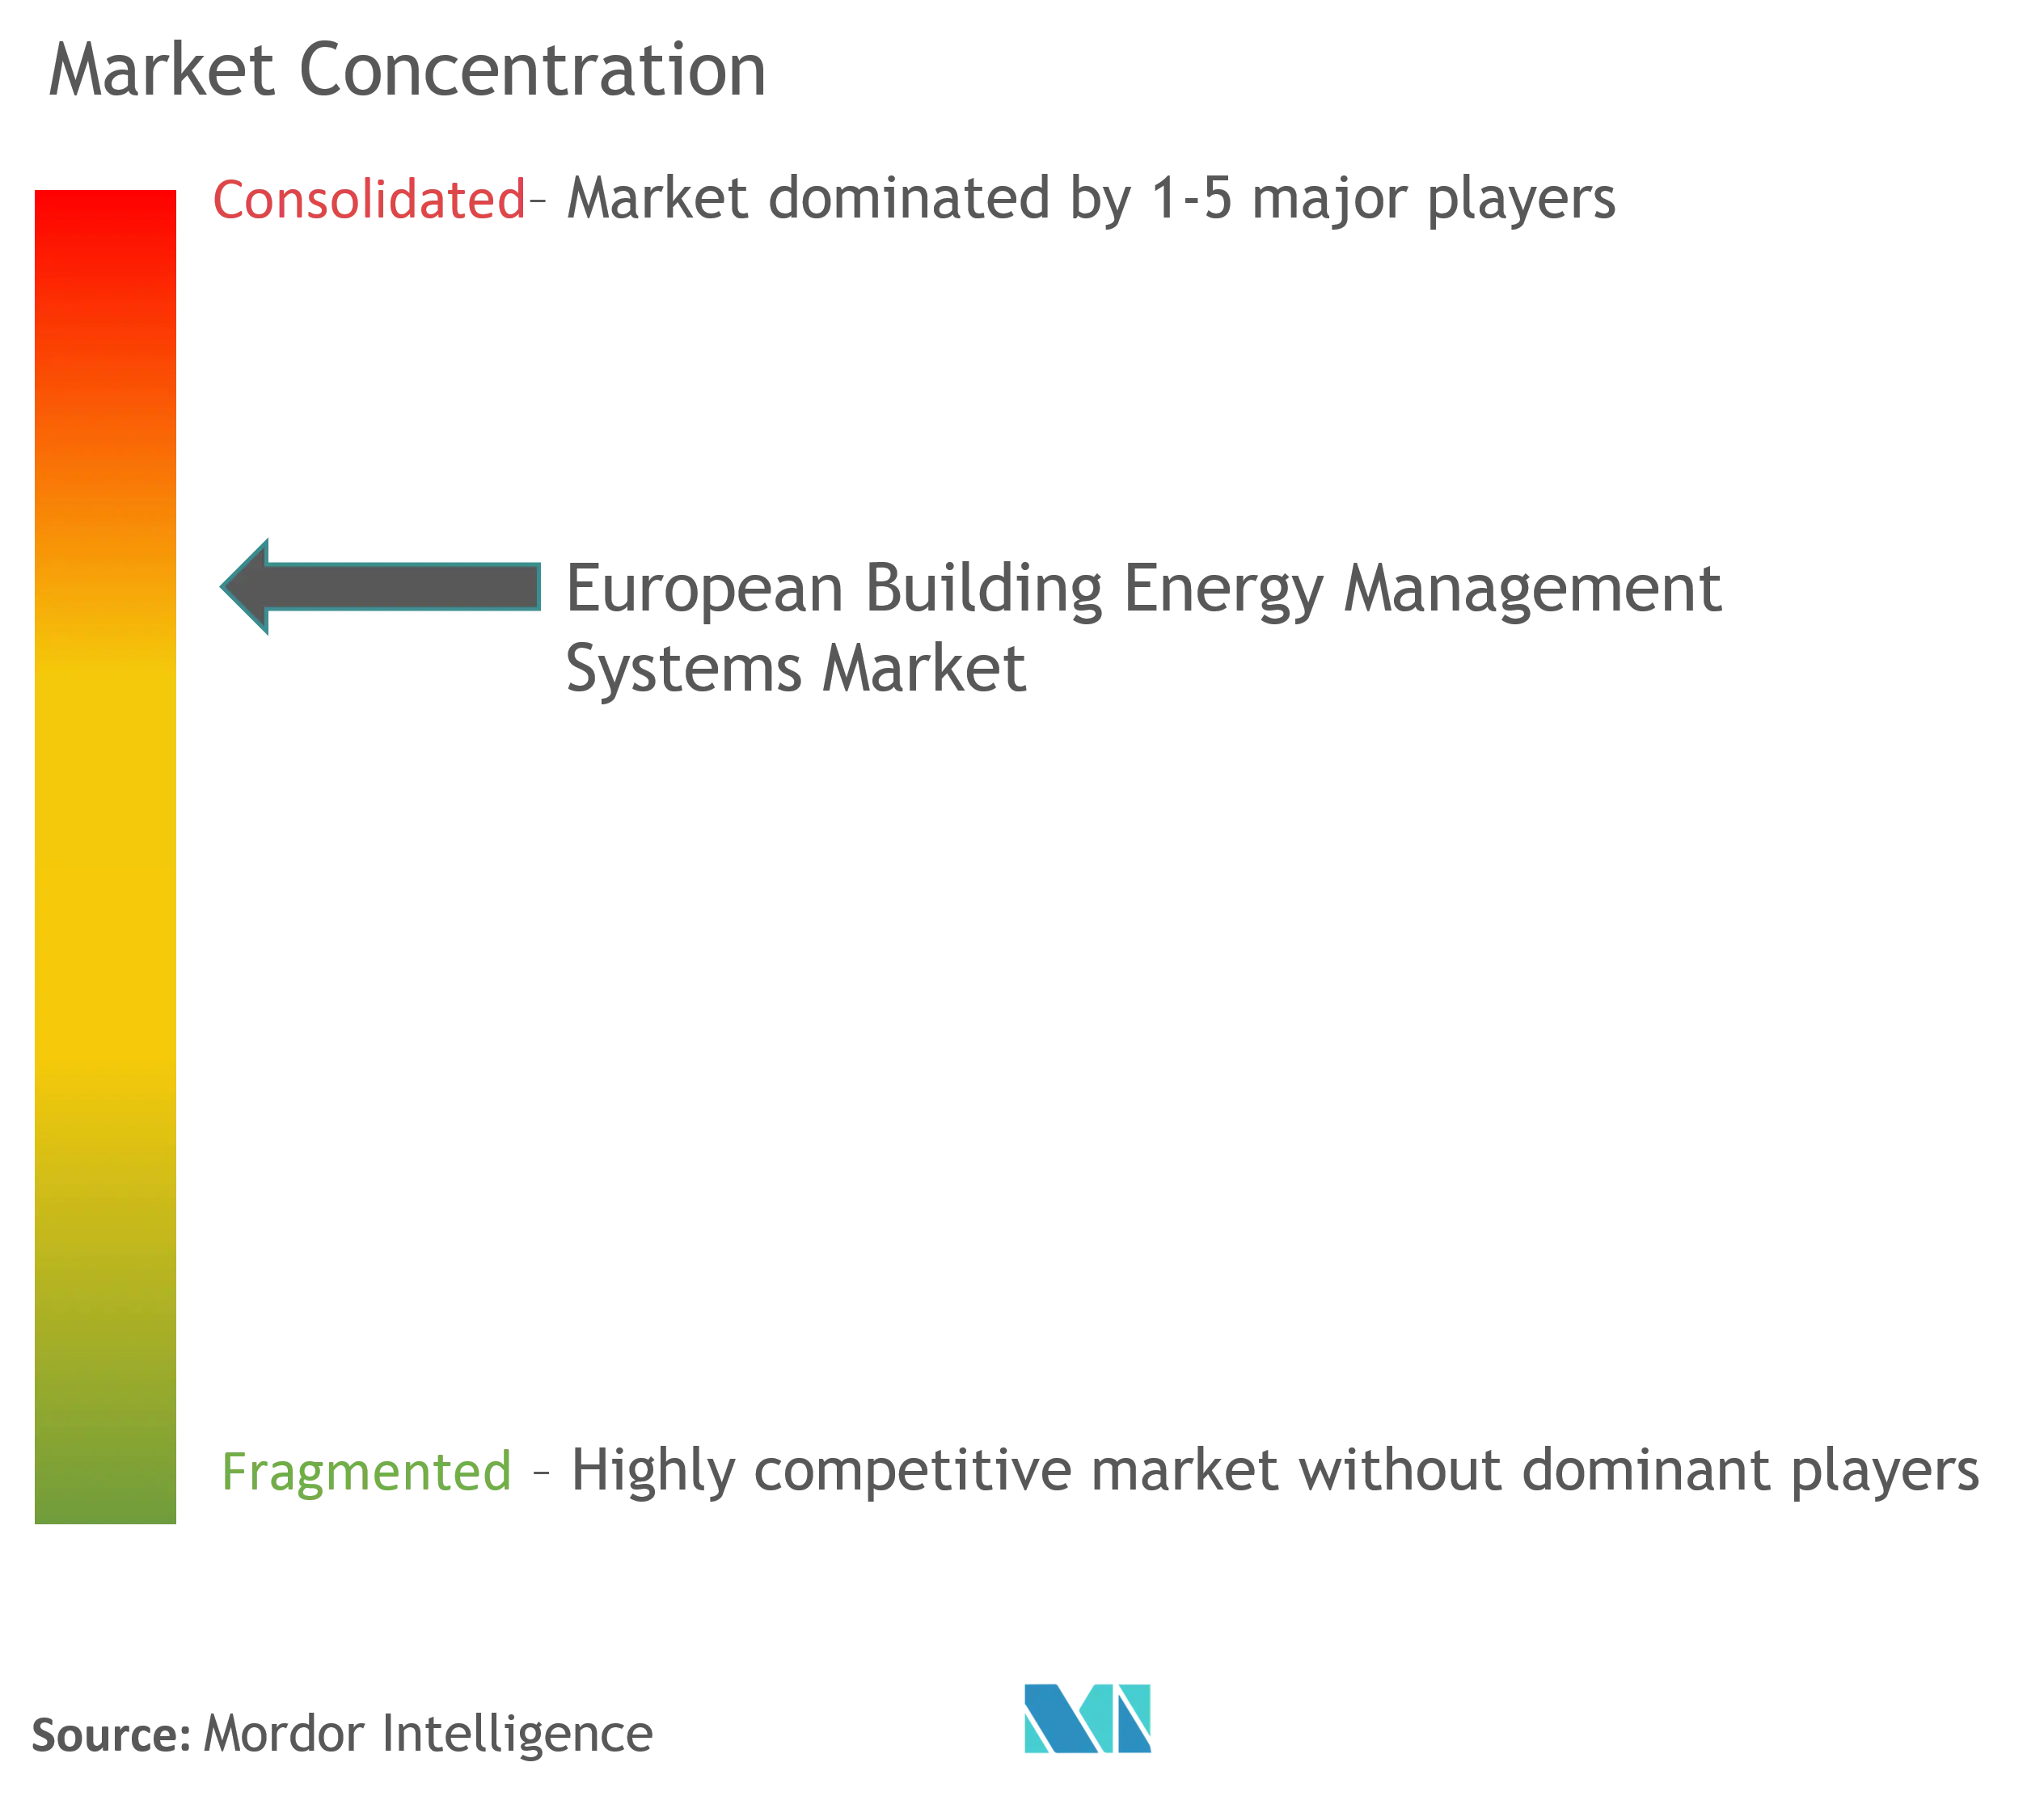 ヨーロッパの建物エネルギー管理システム市場集中度